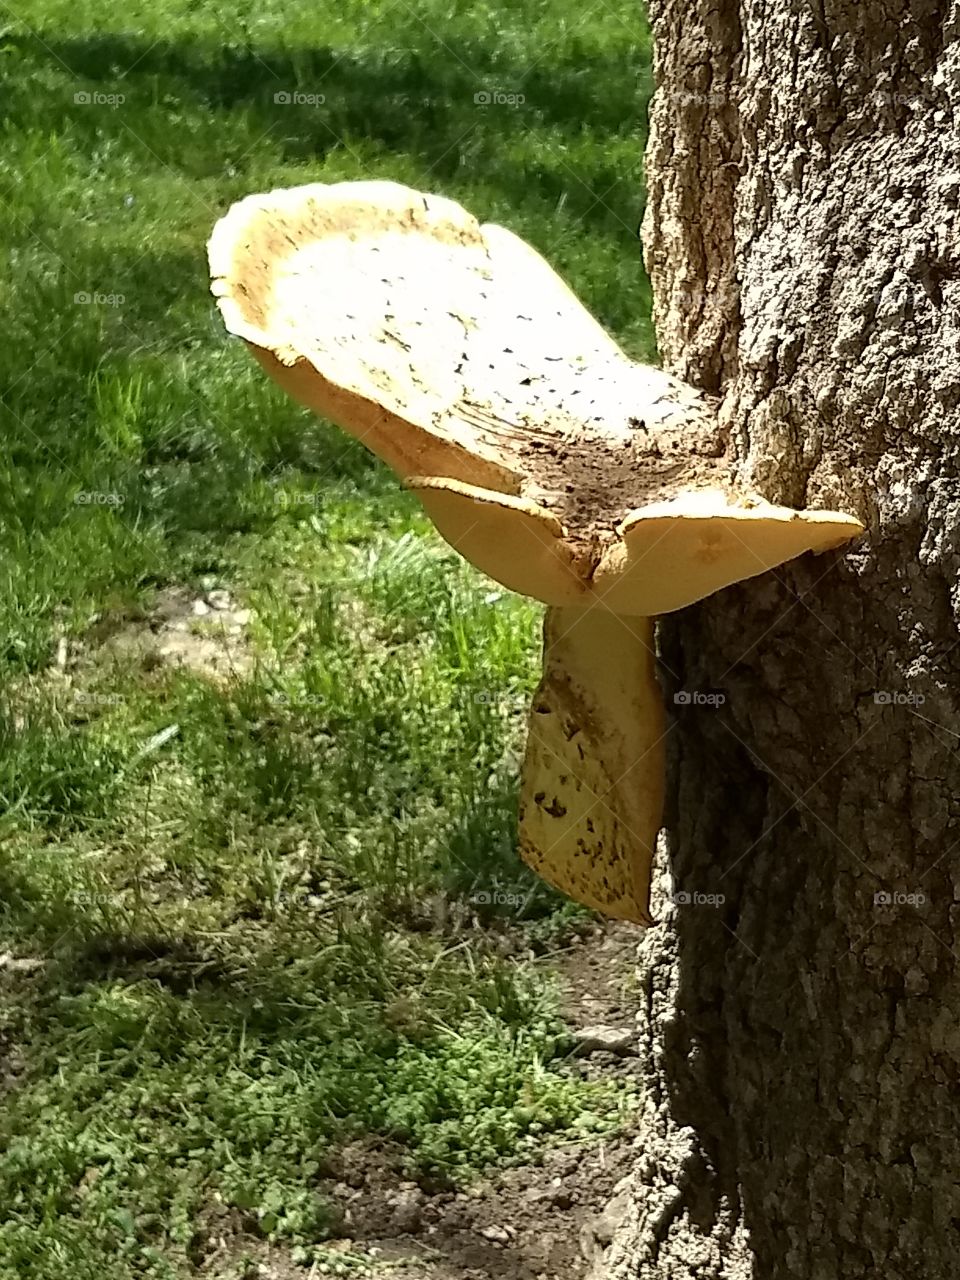 Mushroom on a tree.